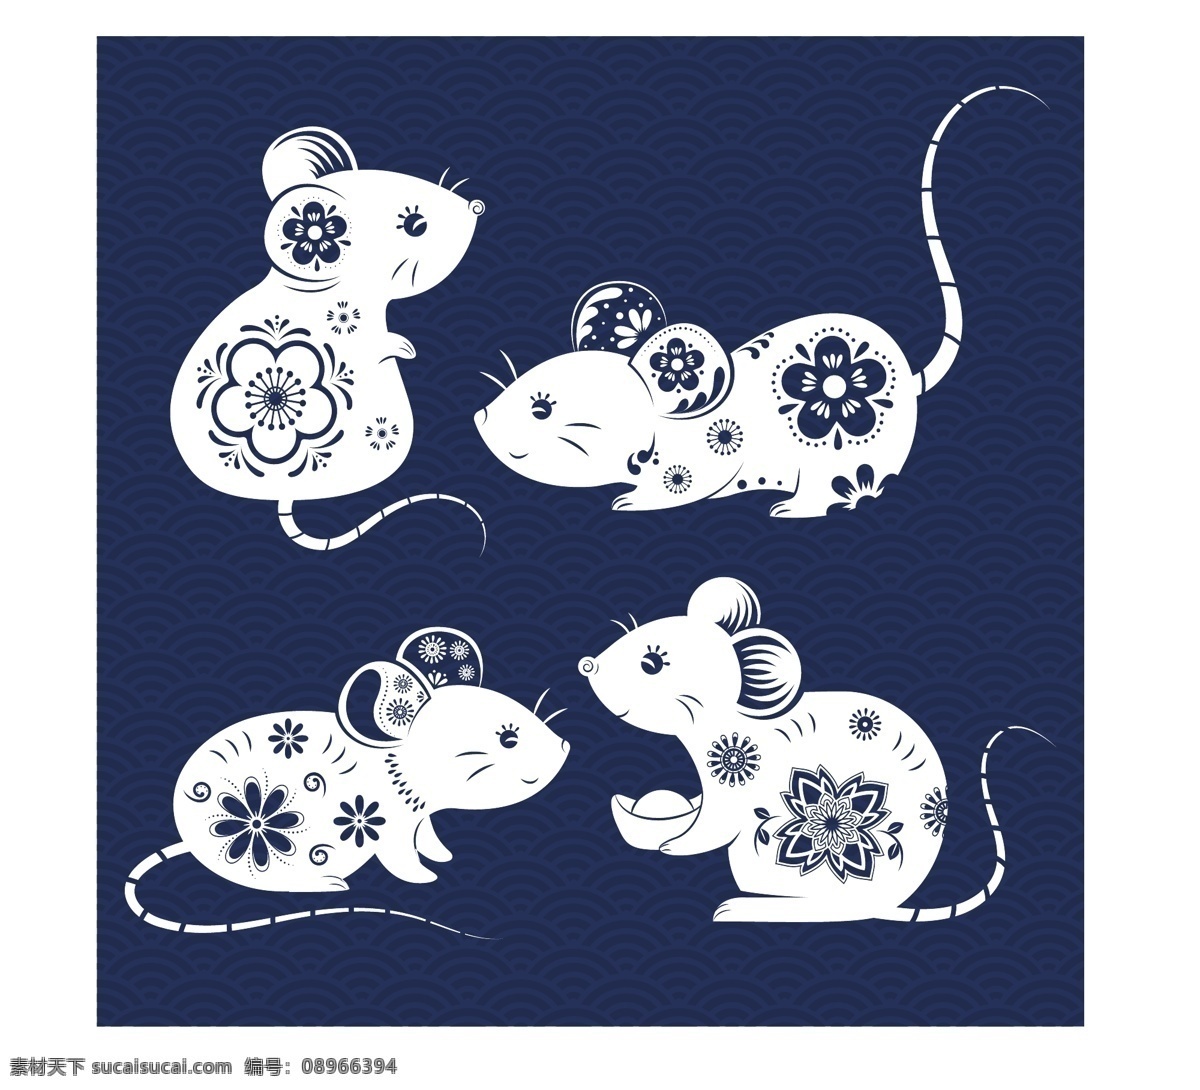 鼠年 剪纸老鼠 卡通老鼠 可爱老鼠 矢量素材